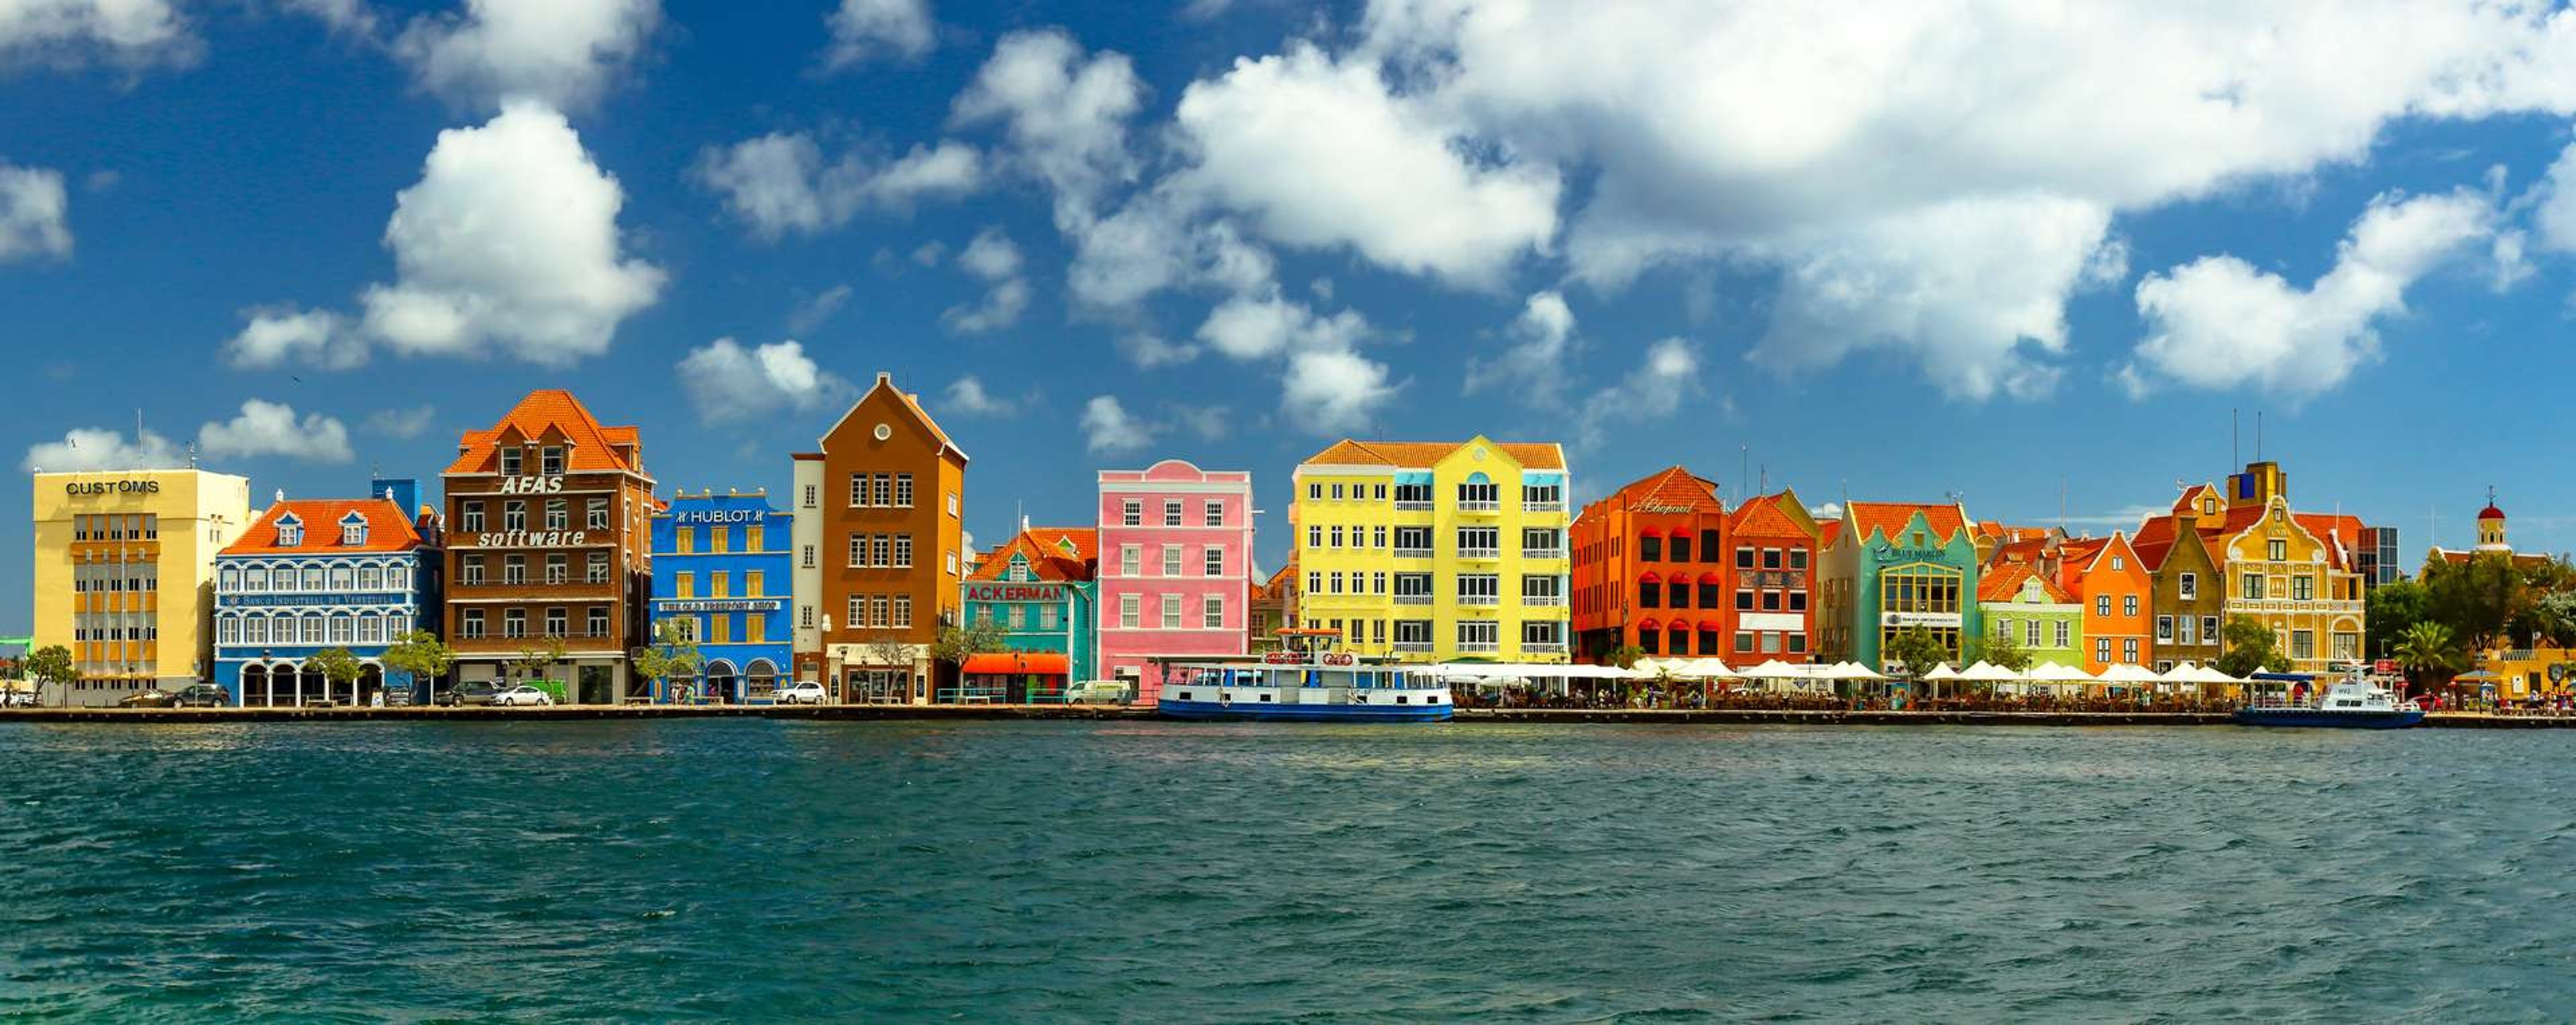 Curacao   Handelskade Willemstad